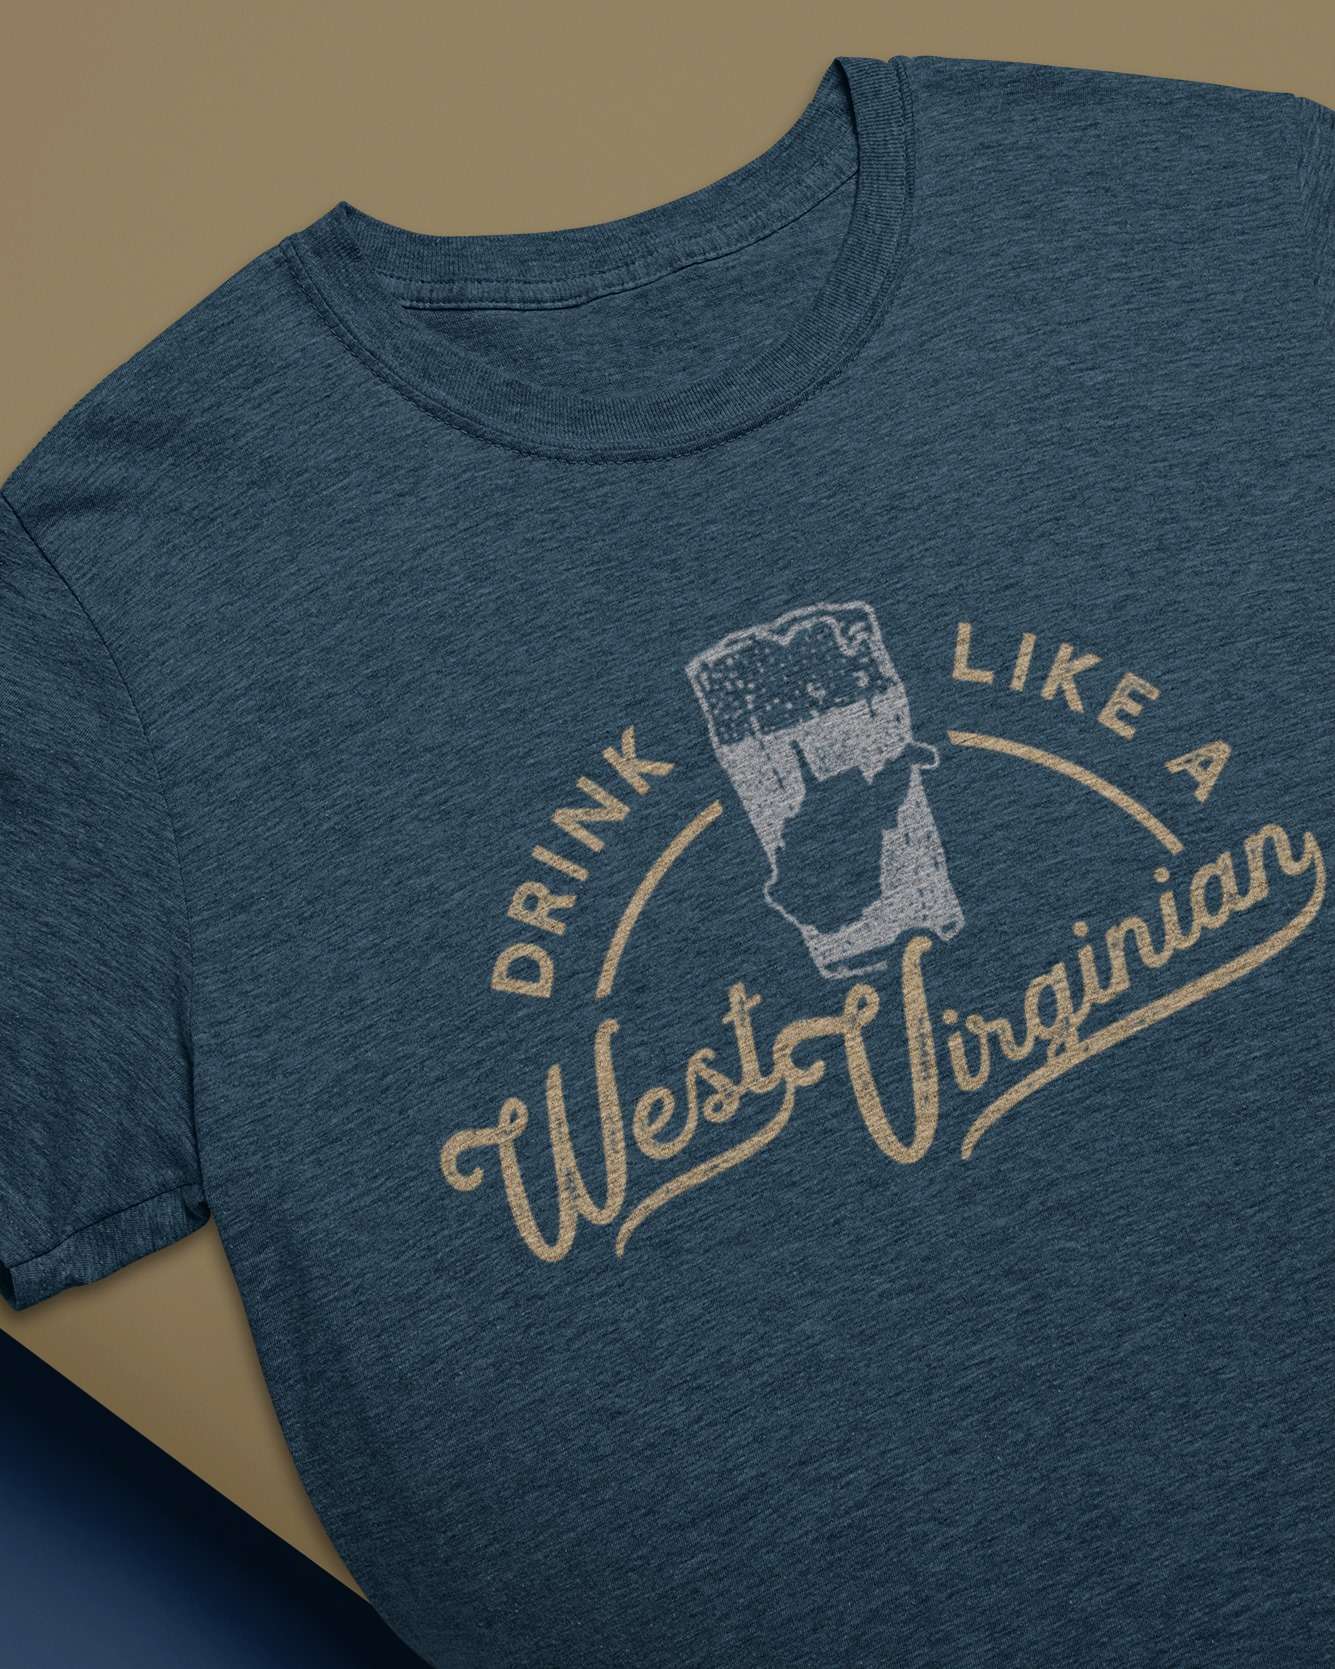 Drink like a West Virginian - Virginia US state, beer lover